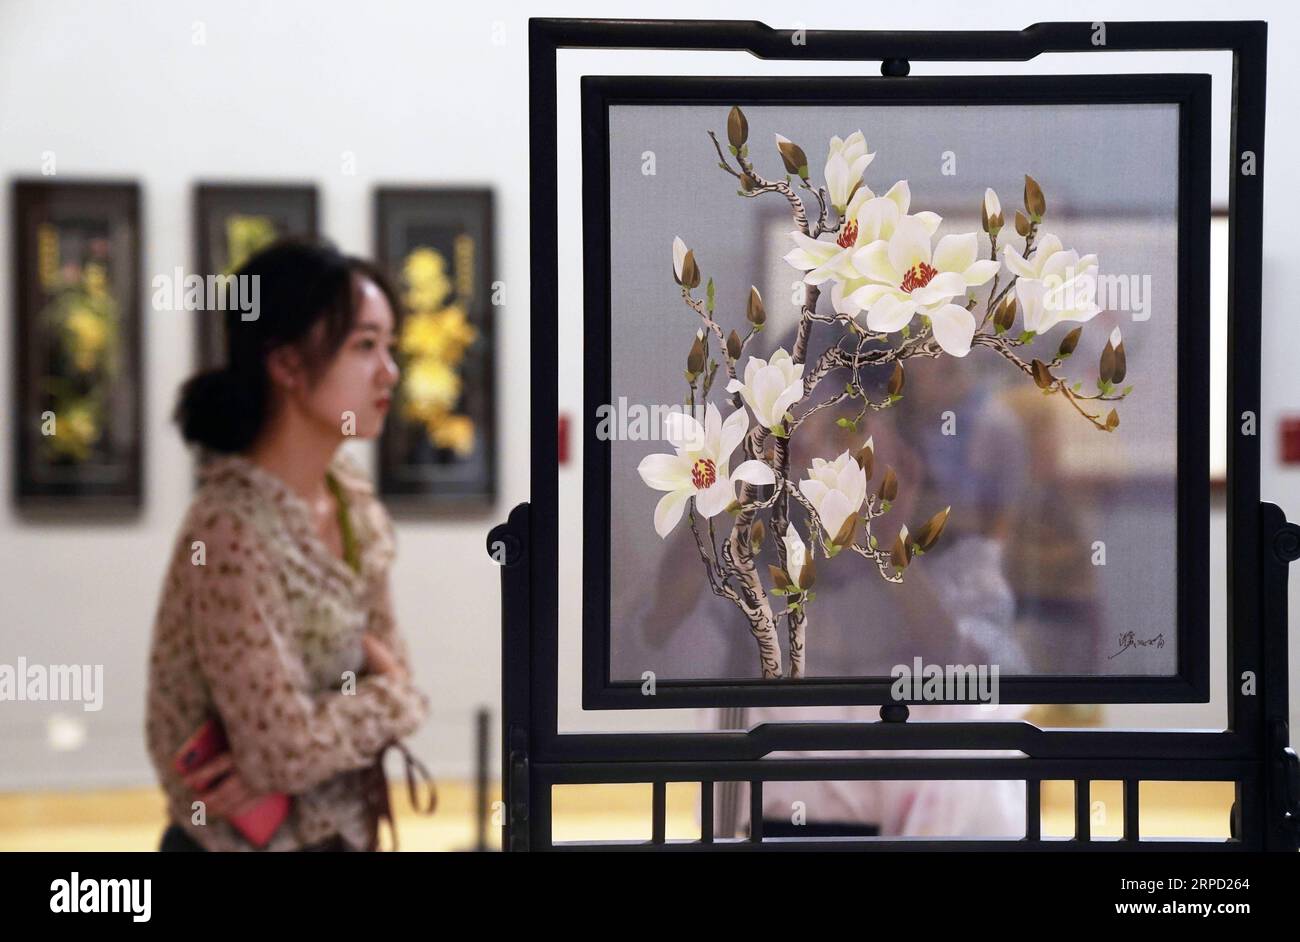 (190719) -- PEKING, 19. Juli 2019 -- Menschen schauen sich eine Ausstellung während des Splendid China an -- Ausstellung für kunstvolle Suzhou-Stickereien im National Art Museum of China (NAMOC) in Peking, Hauptstadt von China, 19. Juli 2019. Die Ausstellung, die am Freitag hier eröffnet wird, zeigt eine reiche Sammlung von Werken der chinesischen Suzhou-Stickmeister in der zeitgenössischen Ära. ) CHINA-BEIJING-ART-SUZHOU STICKAUSSTELLUNG (CN) JINXLIANGKUAI PUBLICATIONXNOTXINXCHN Stockfoto